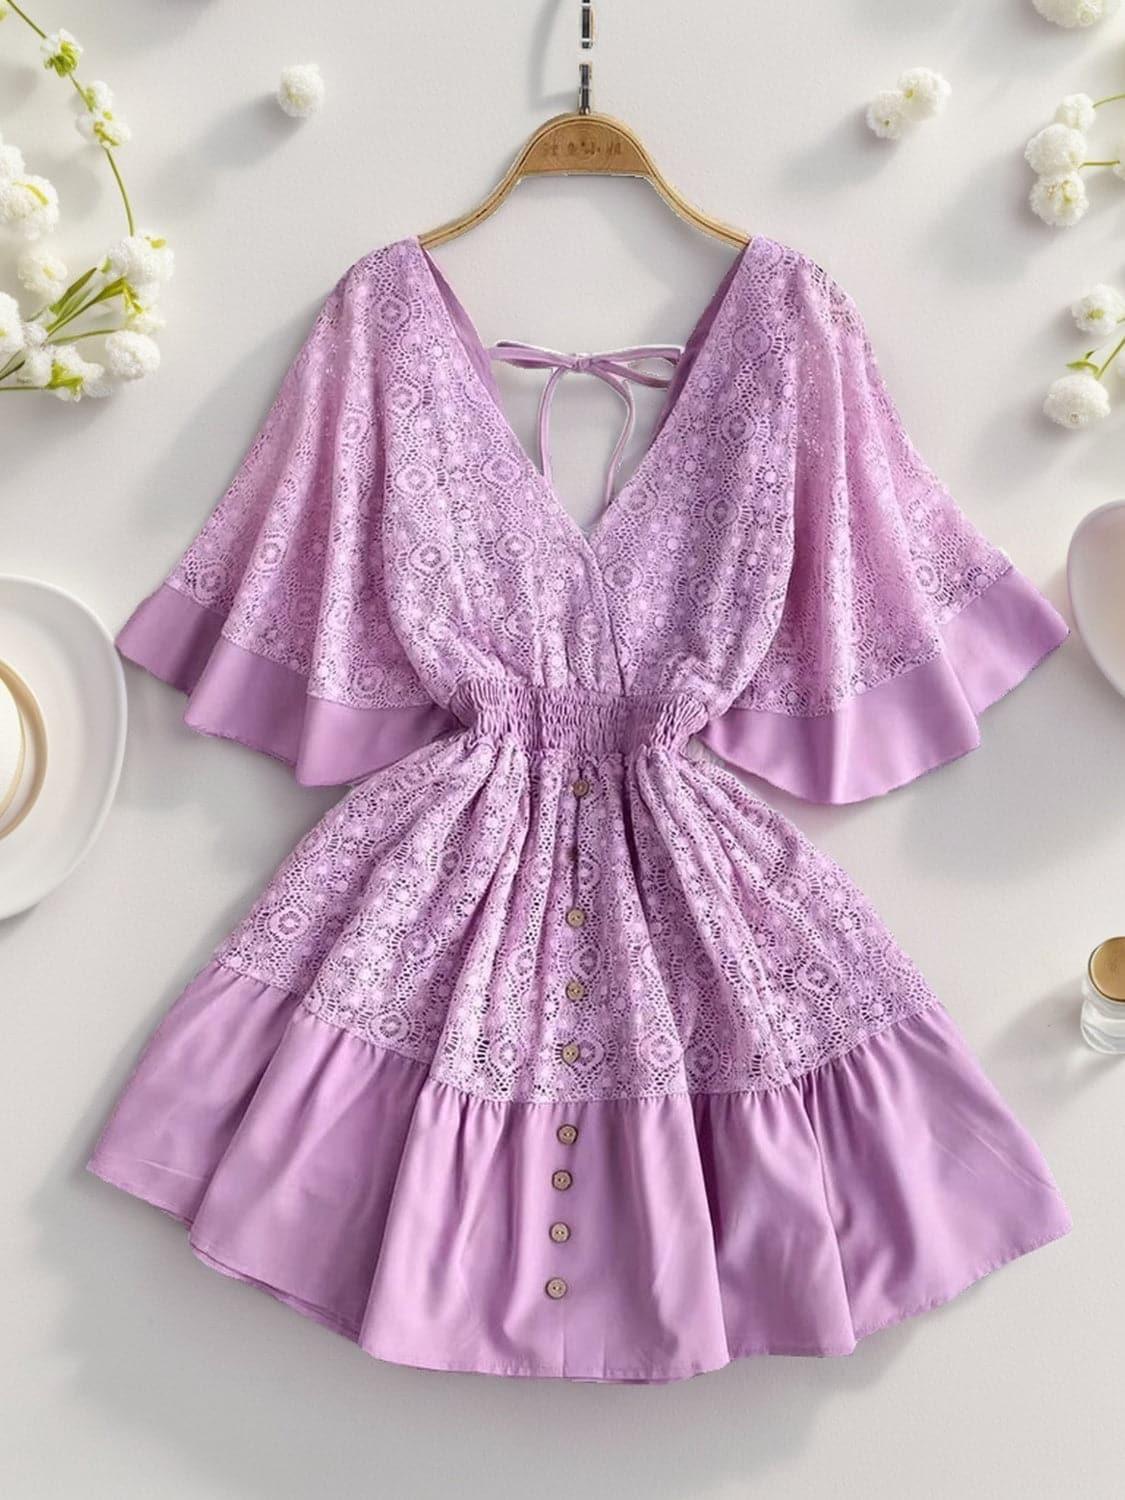 Andrea Lace Cutout Half Sleeve Mini Dress - SwagglyLife Home & Fashion